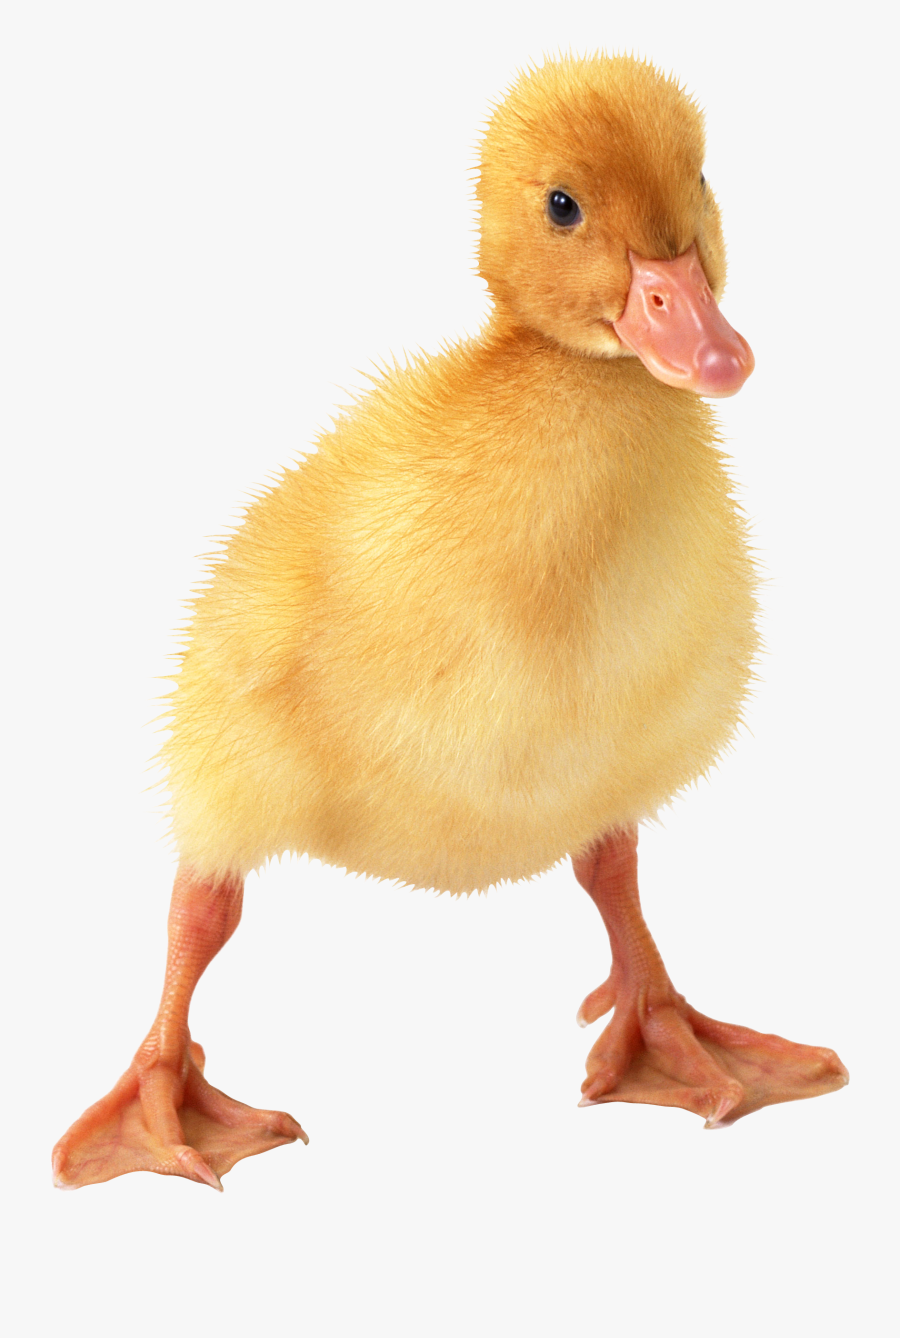 Little Duck Png Image - Little Duck Png, Transparent Clipart